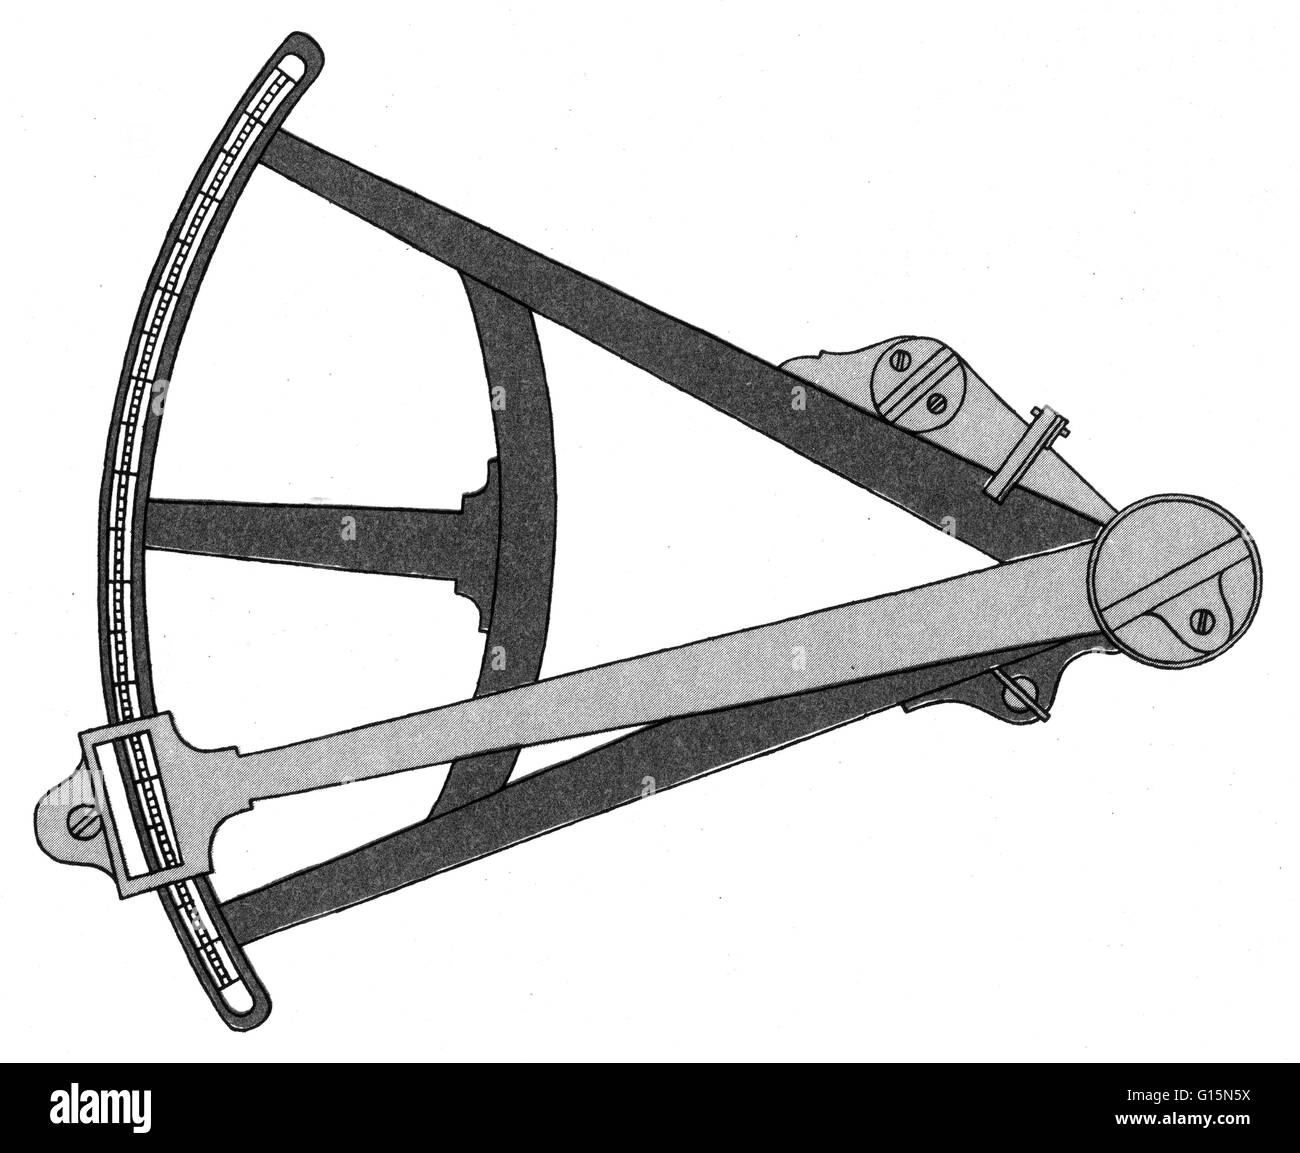 L'octant, également appelée quadrant réfléchissant, est un instrument de mesure utilisé principalement dans la navigation. C'est un type d'instrument de réflexion. Le quadrant a été le premier instrument astronomique converti pour une utilisation nautique. Il a été utilisé pour déterminer l'alti Banque D'Images